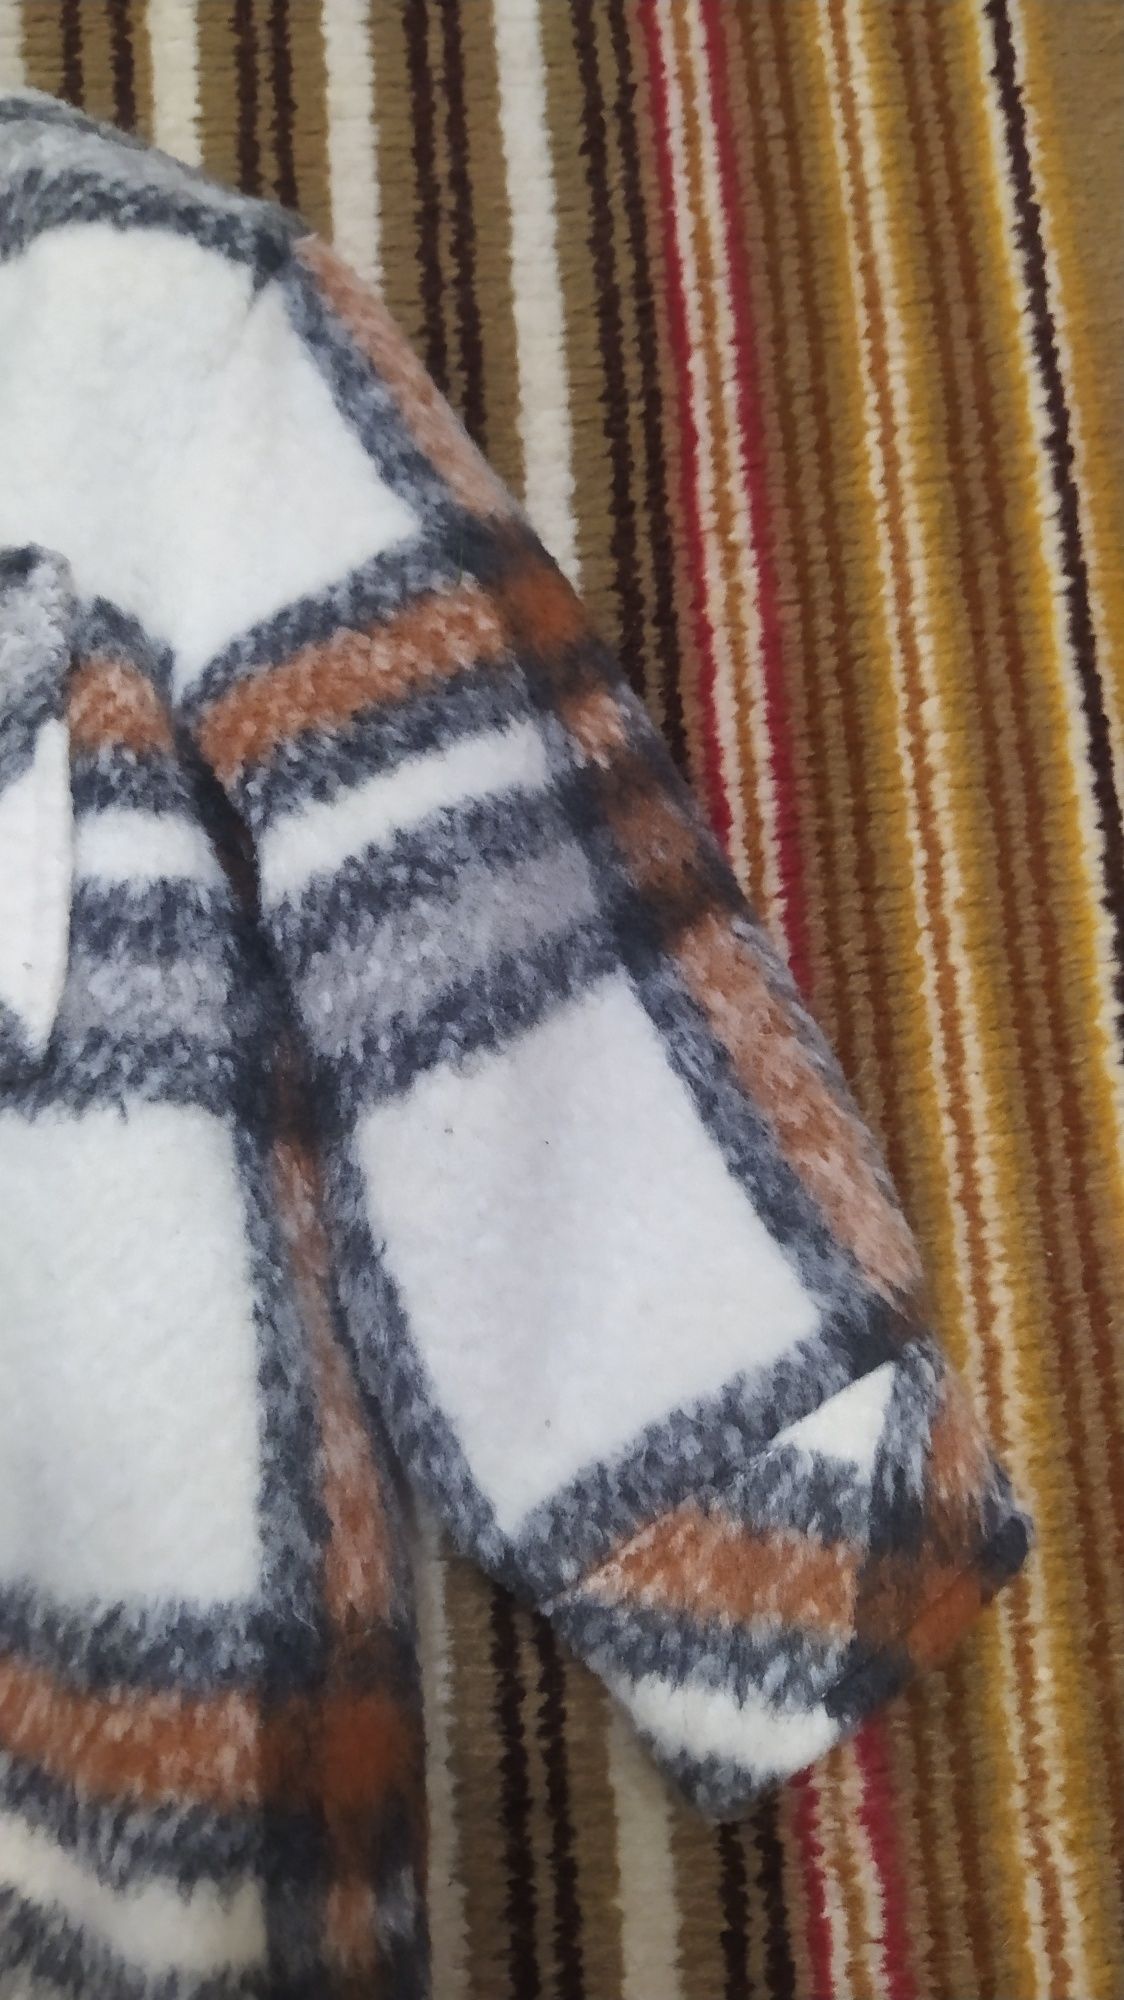 Kurtka wiatrówka wiosenna typu koszula w kratę Matalan nowa typu polar